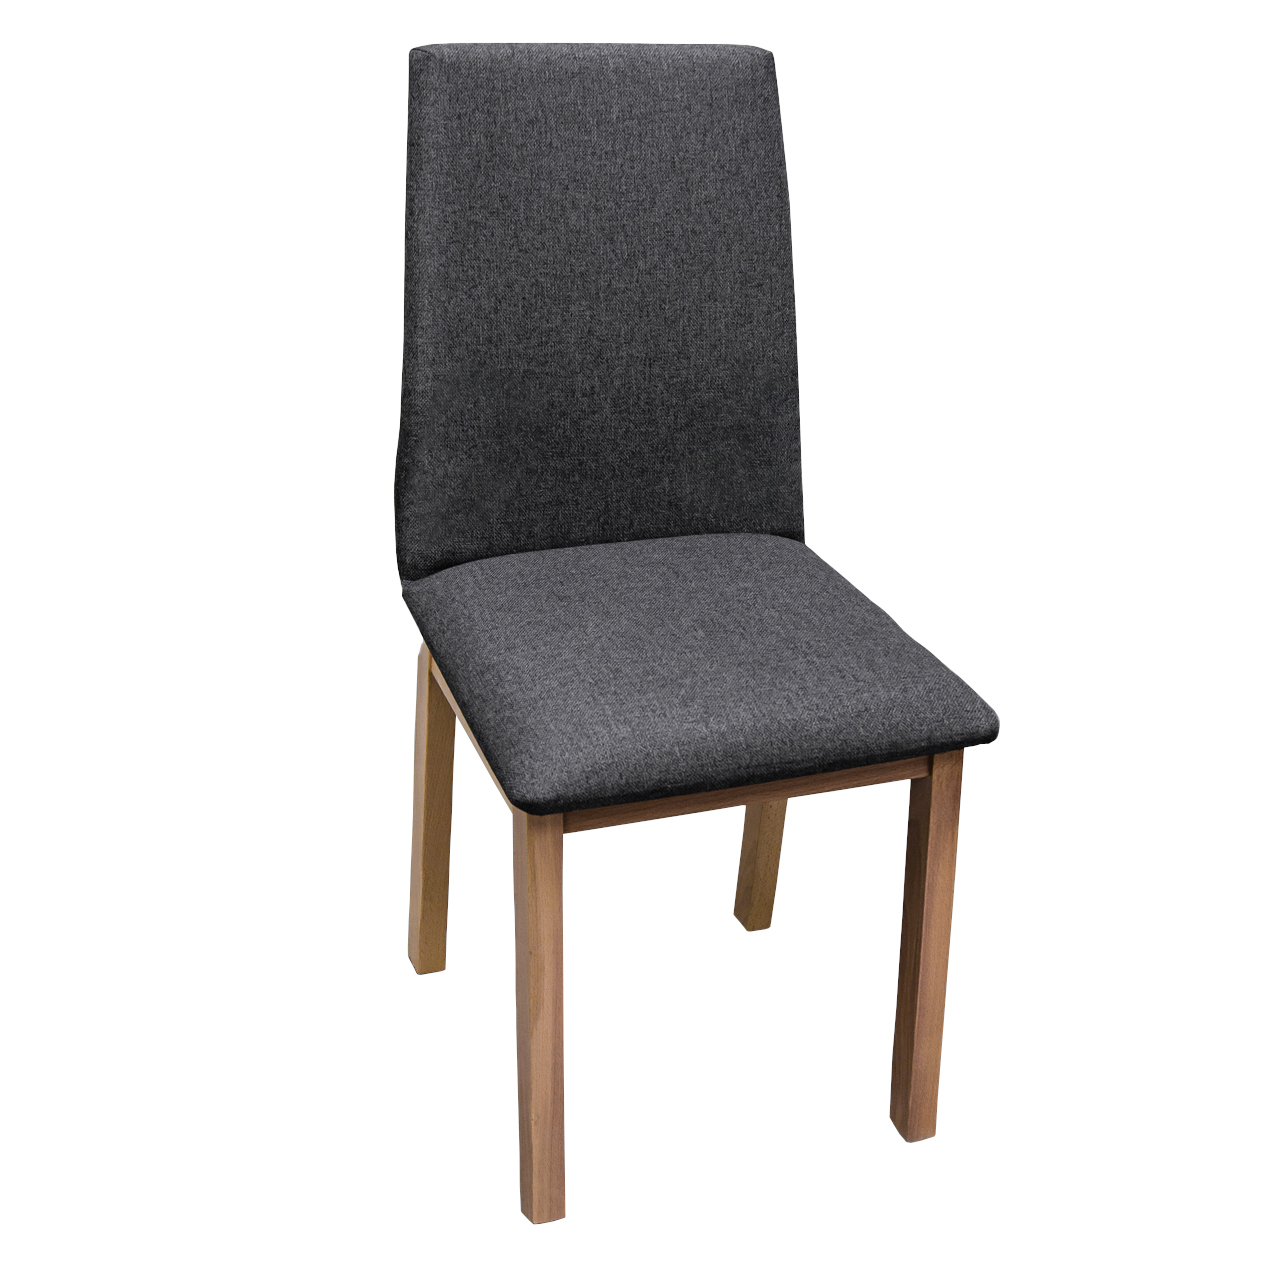 Chair LUNA 1 beech / 8B